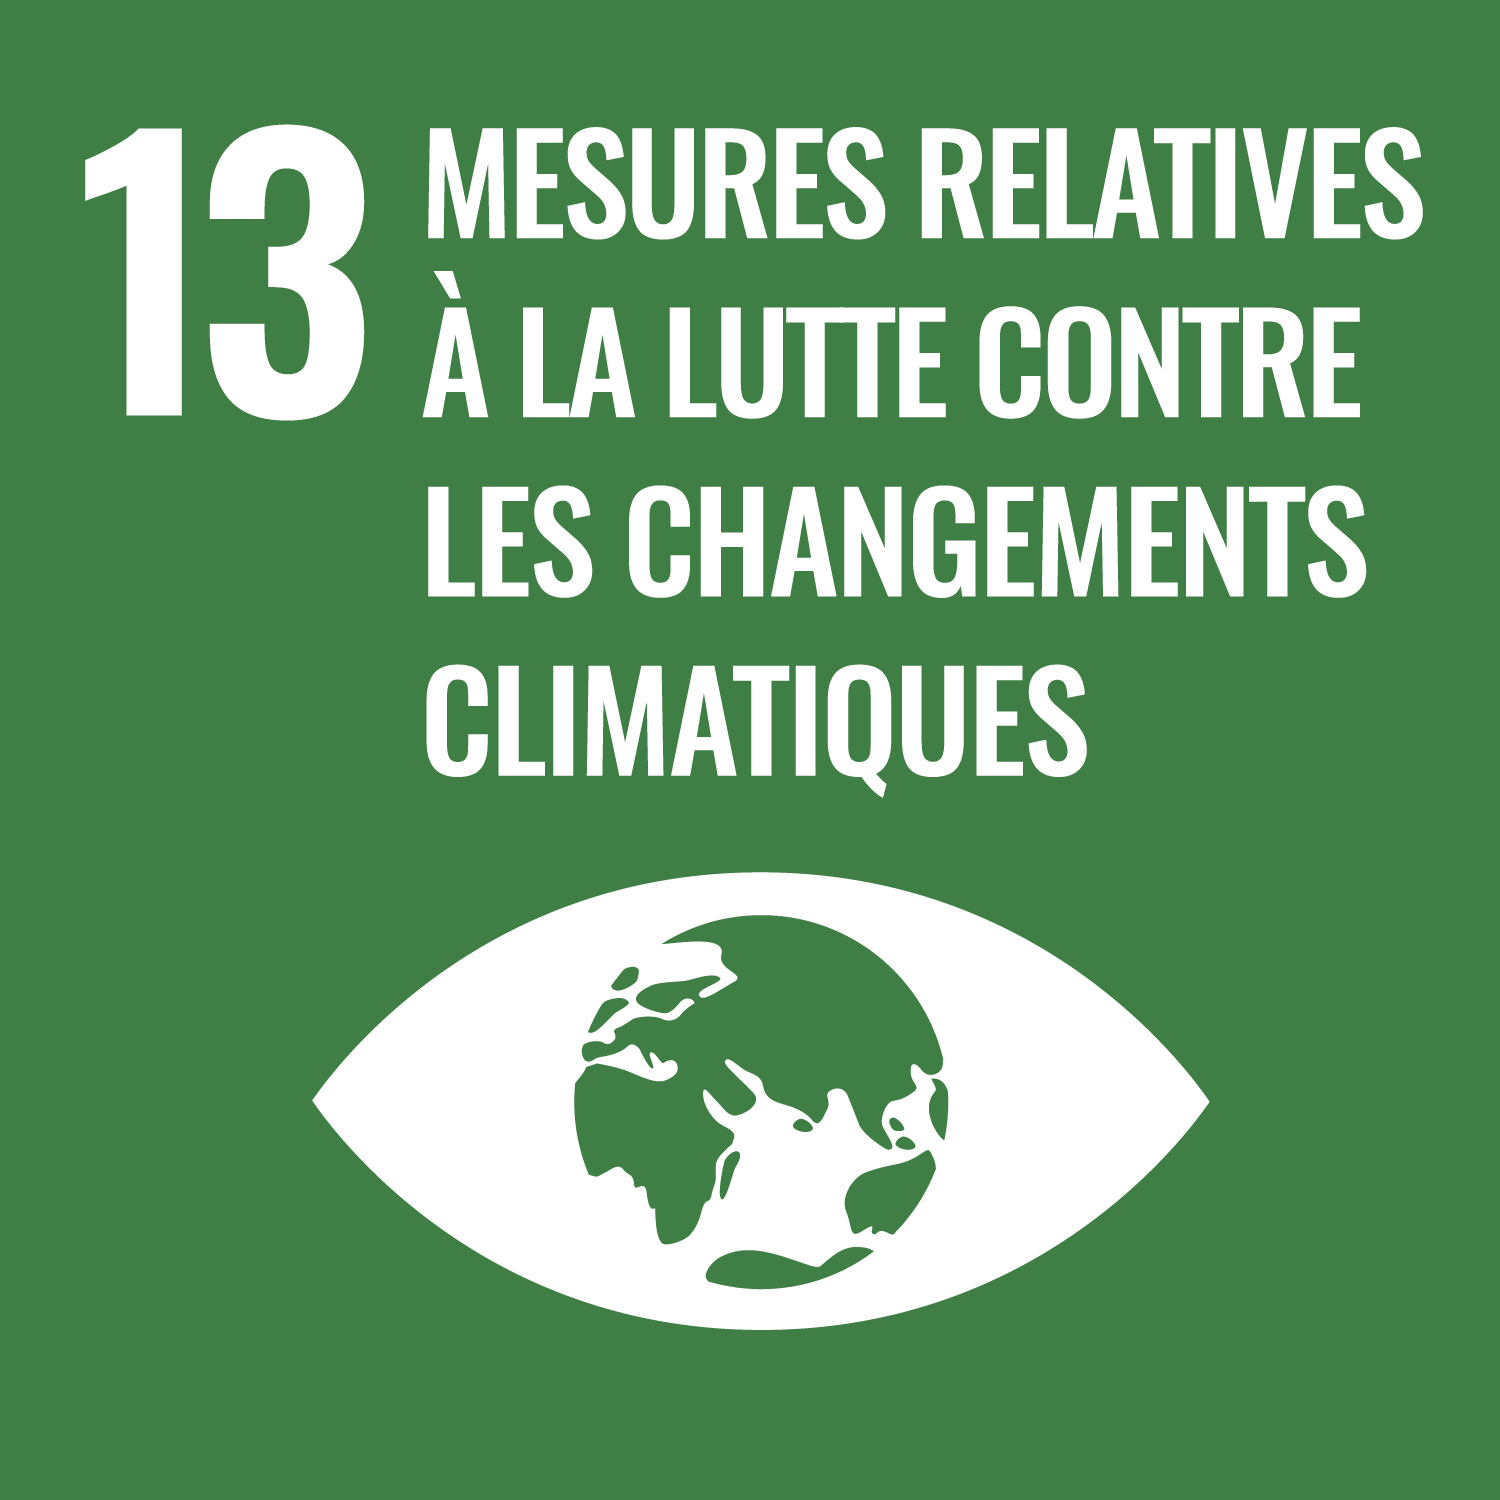 Objectif de développement durable 13 : Mesures relatives à la lutte contre le réchauffement climatique;